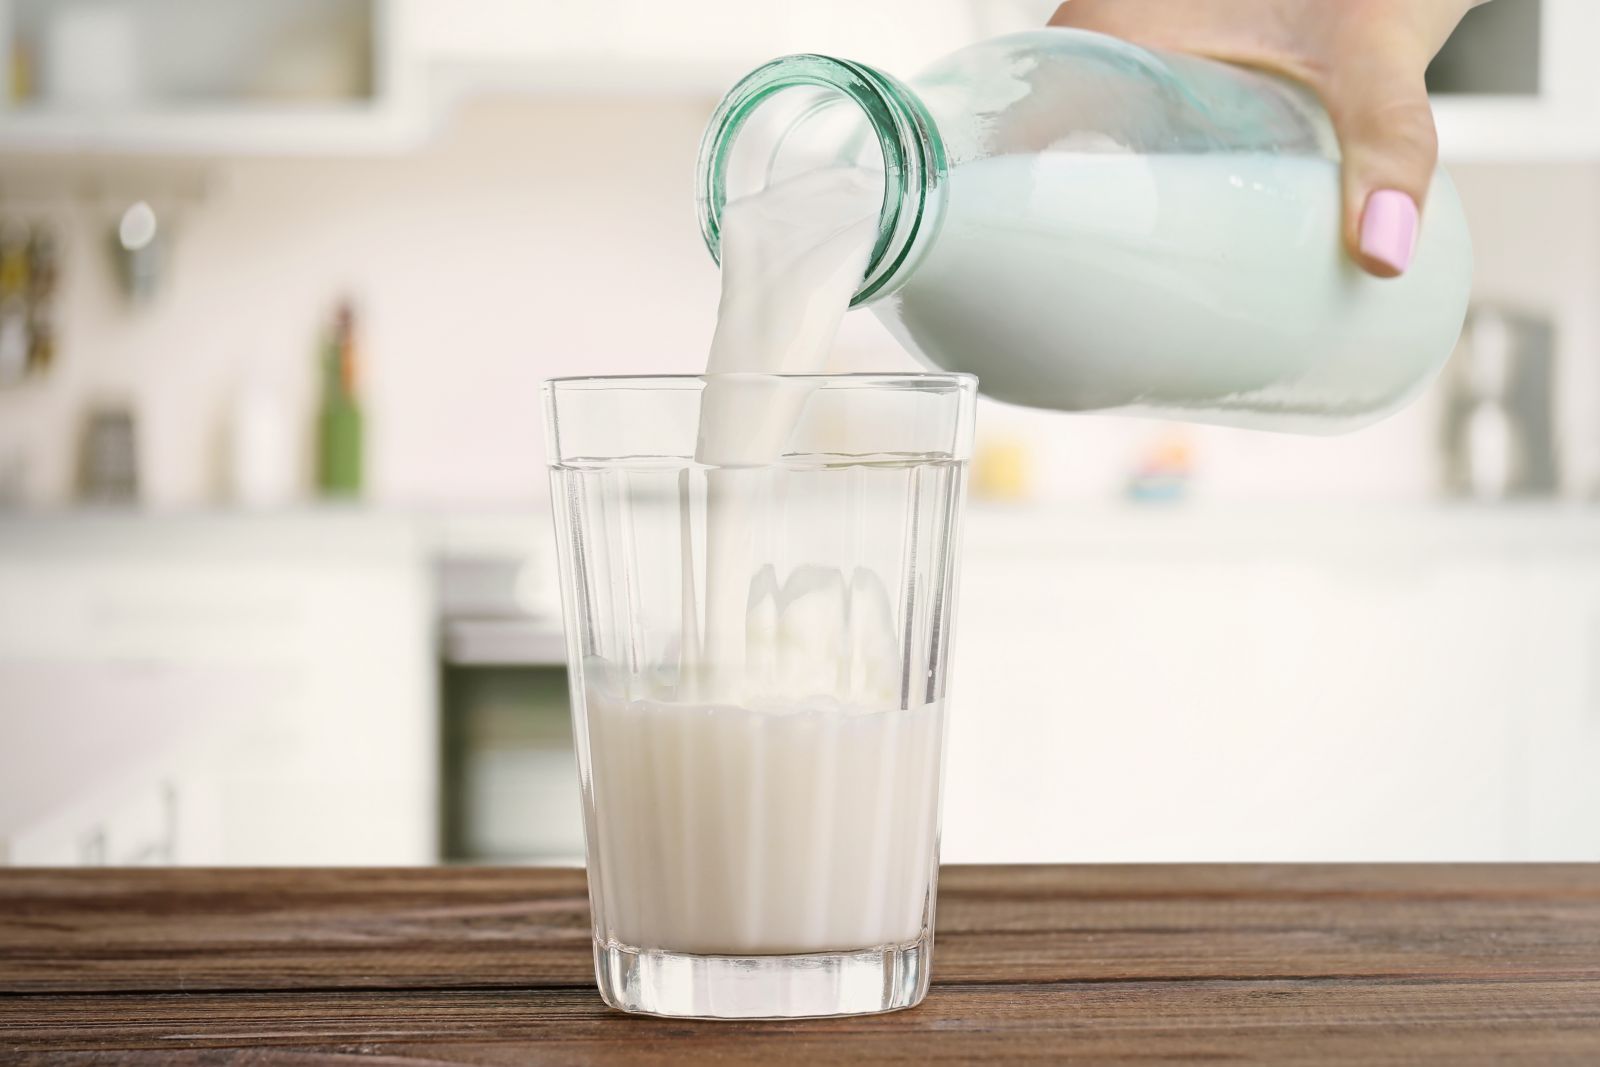 A boltokban megvásárolható tej feliratú termékek csomagolása kizárólag tejet tartalmaz